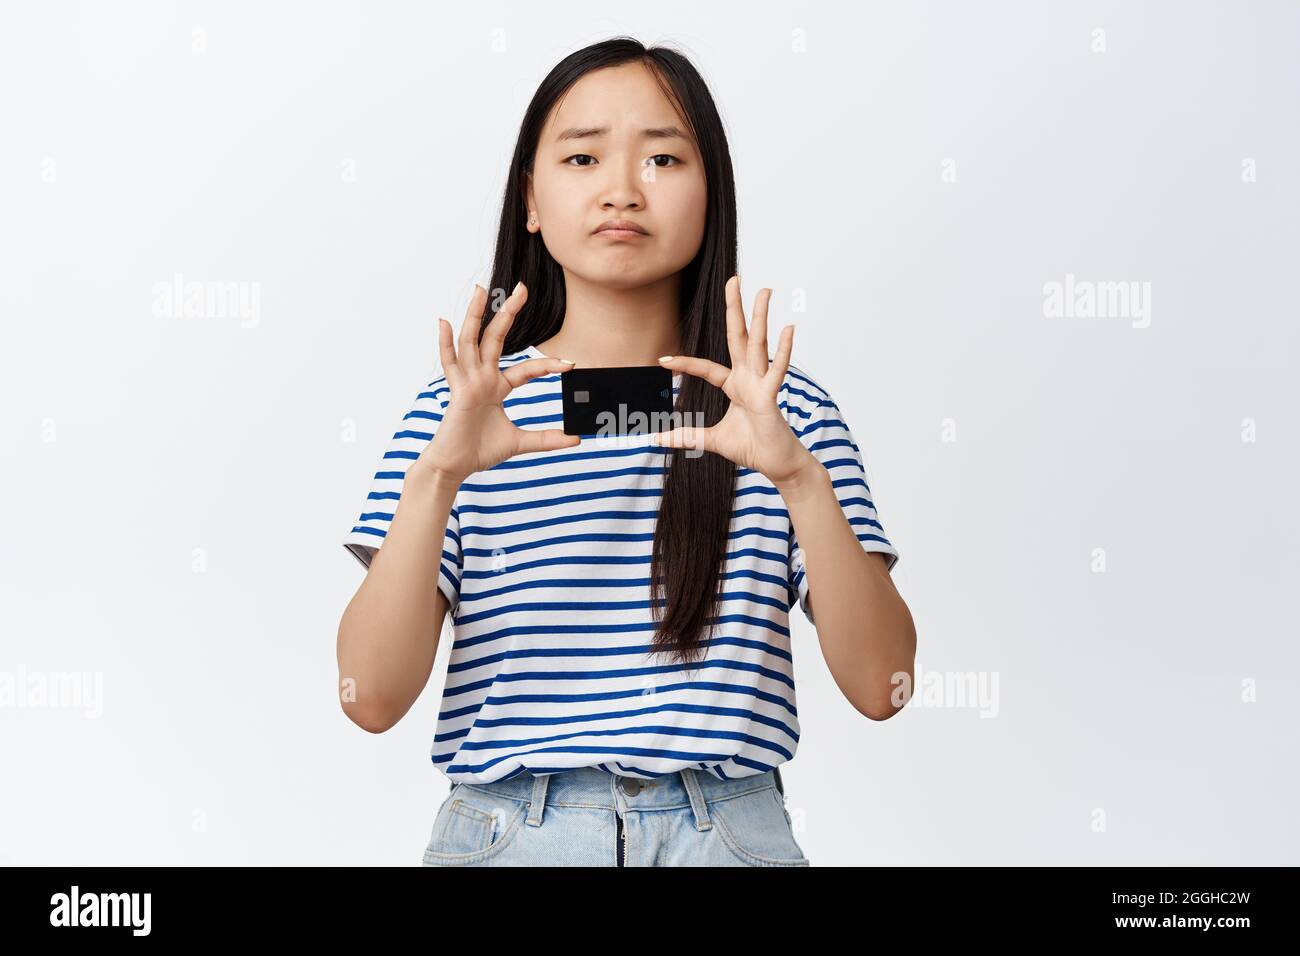 Bild der asiatischen Brünette Mädchen runzelte und Pouts enttäuscht, zeigt schlechte Kreditkarte, kein Geld, stehen über weißem Hintergrund Stockfoto